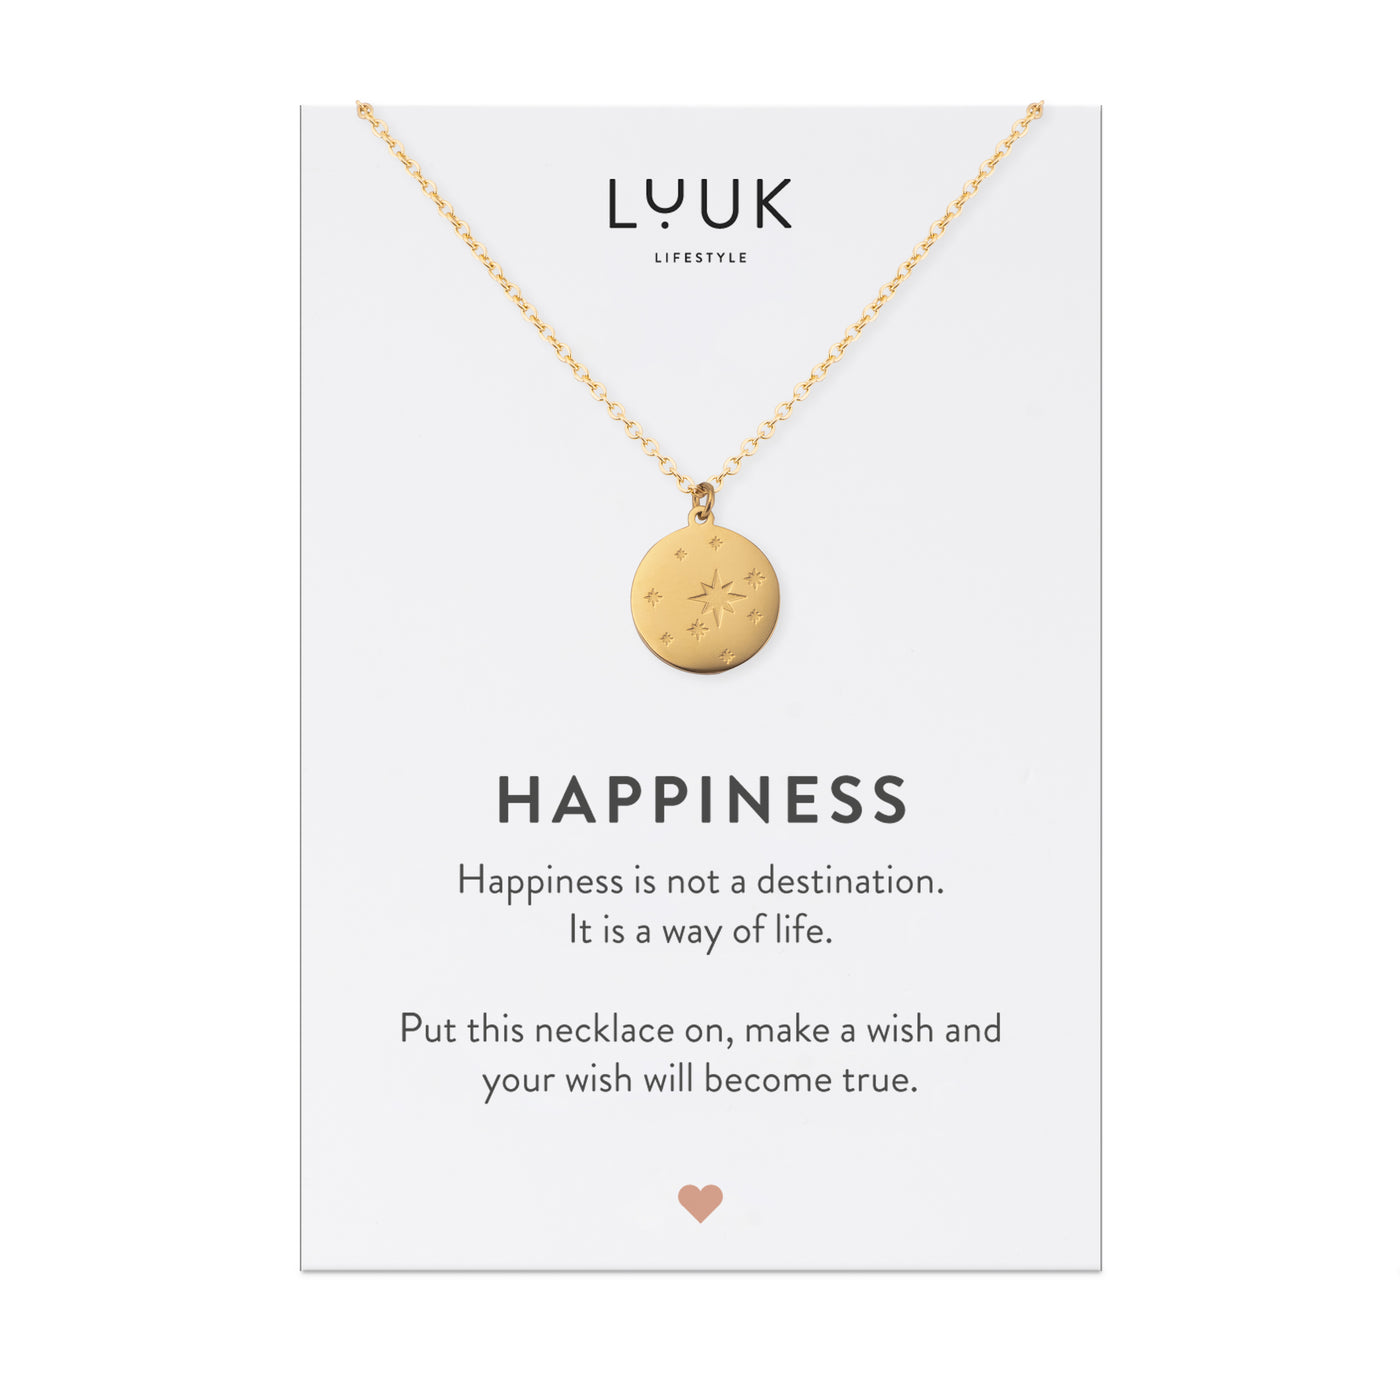 Goldene Halskette mit Sternenhimmel Anhänger auf Happiness Karte von der Brand Luuk Lifestyle.